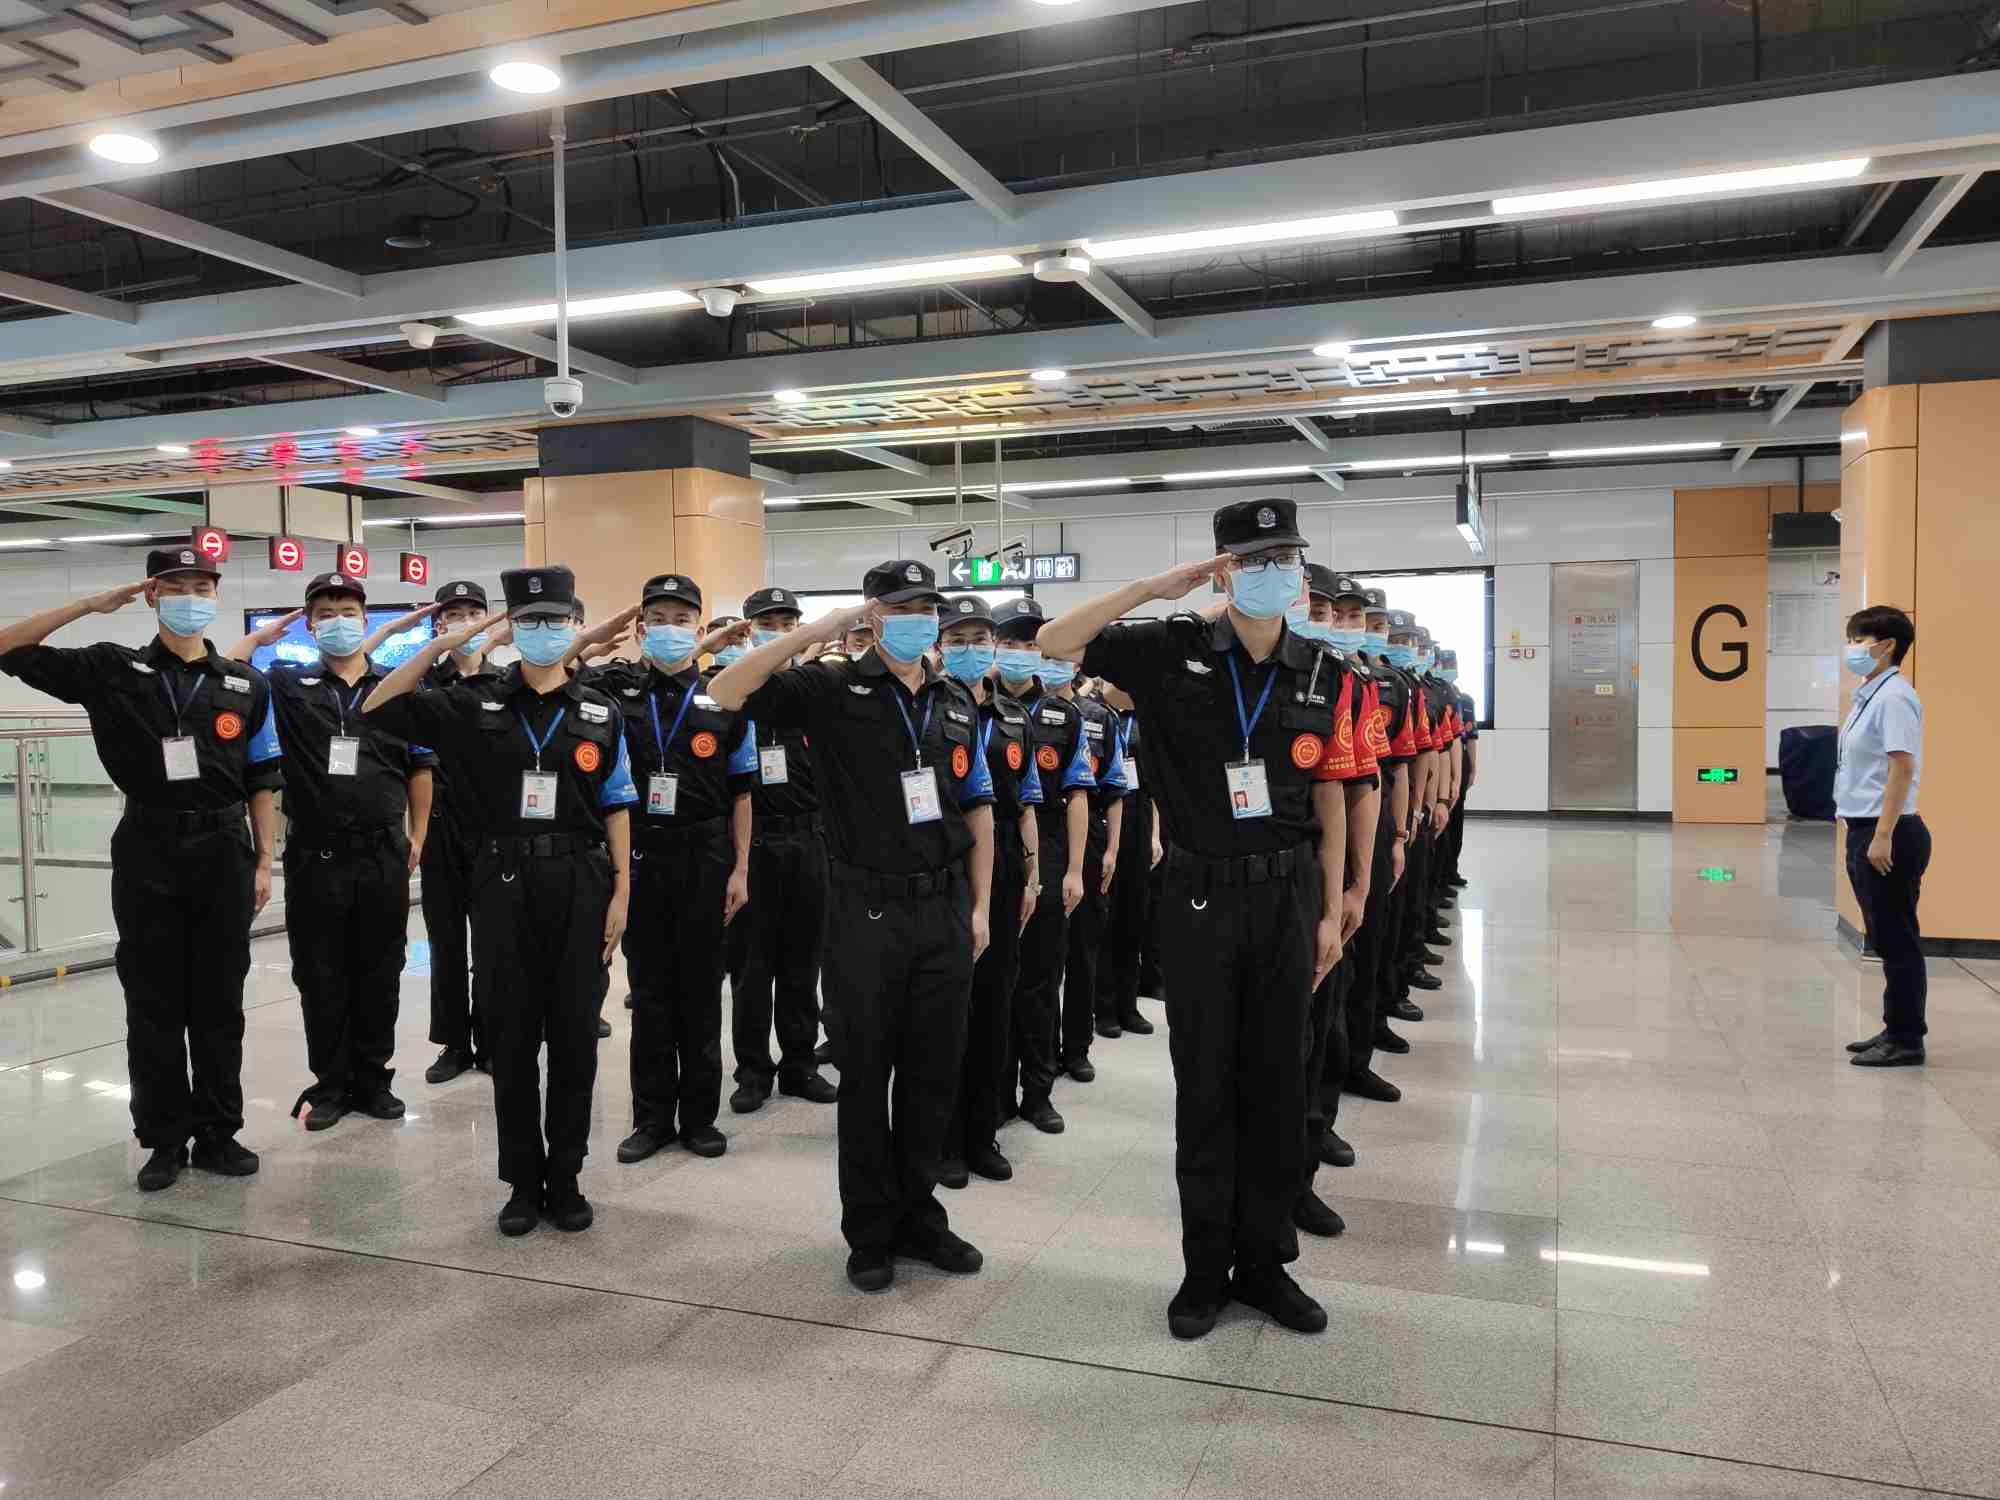 深圳福田区招聘地铁安检员男女若干身高要求:男:170cm